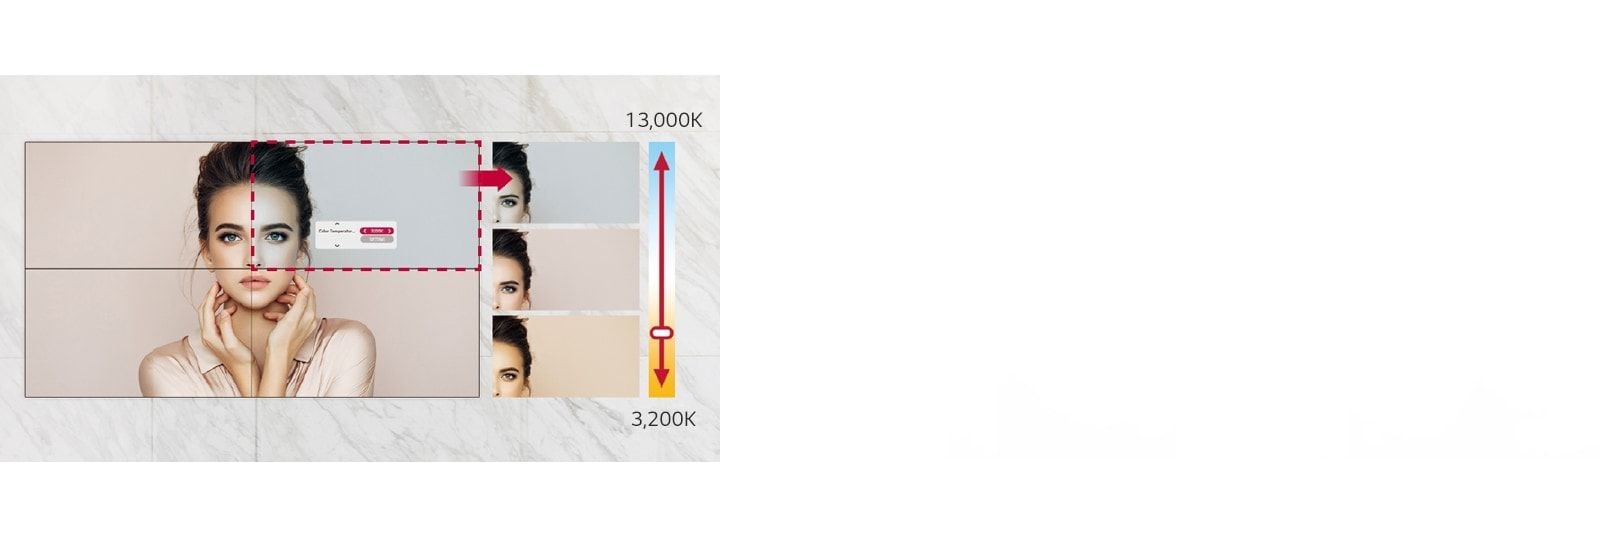 VM5J-H có thể điều chỉnh nhiệt độ màu từ 3.200K đến 13.000K với đơn vị là 100K.